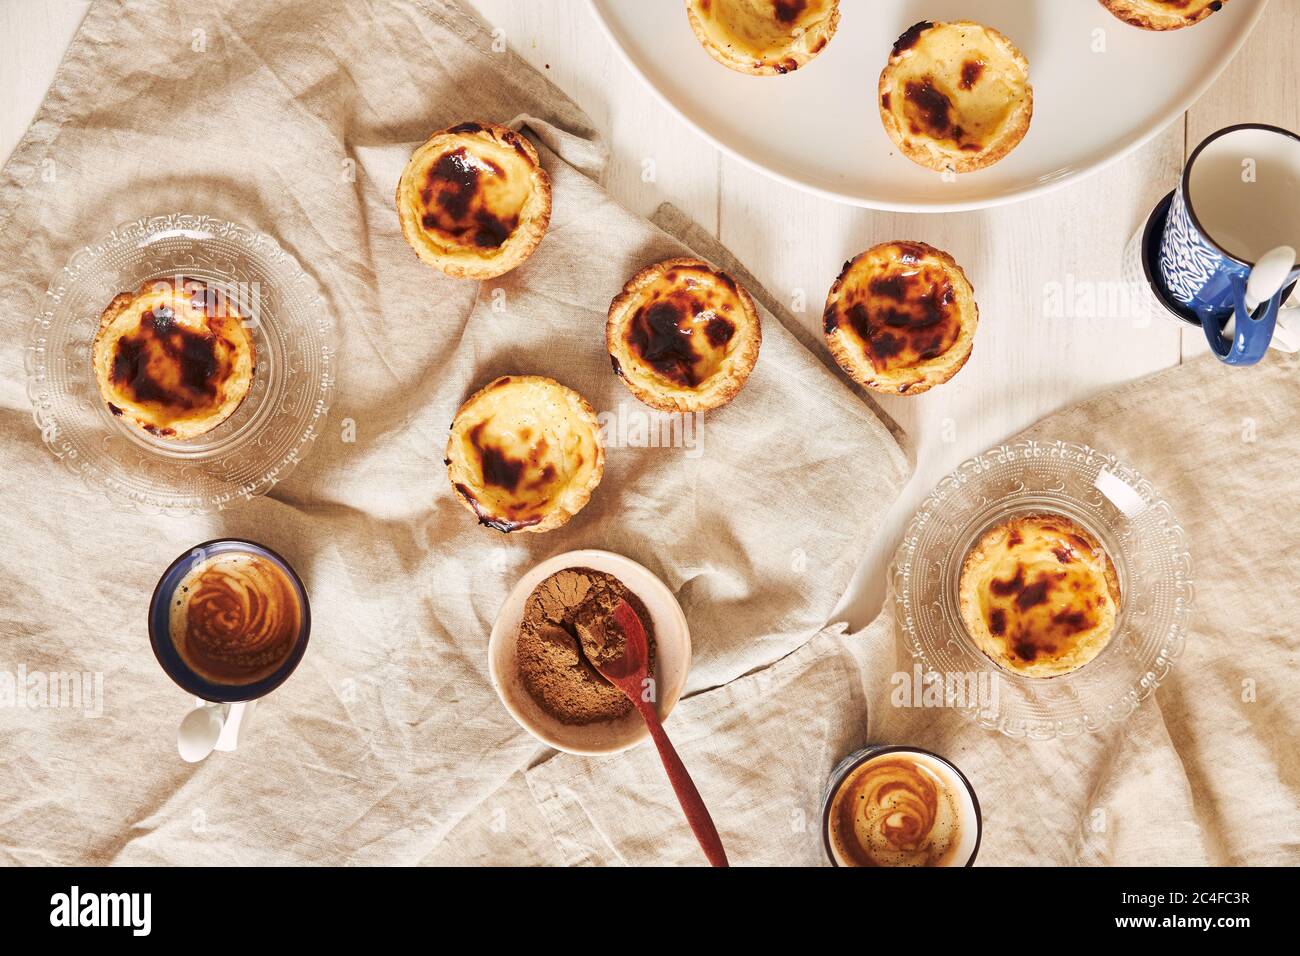 Vue de dessus de délicieux tartes aux œufs portugais avec une tasse d'espresso sur une table blanche Banque D'Images